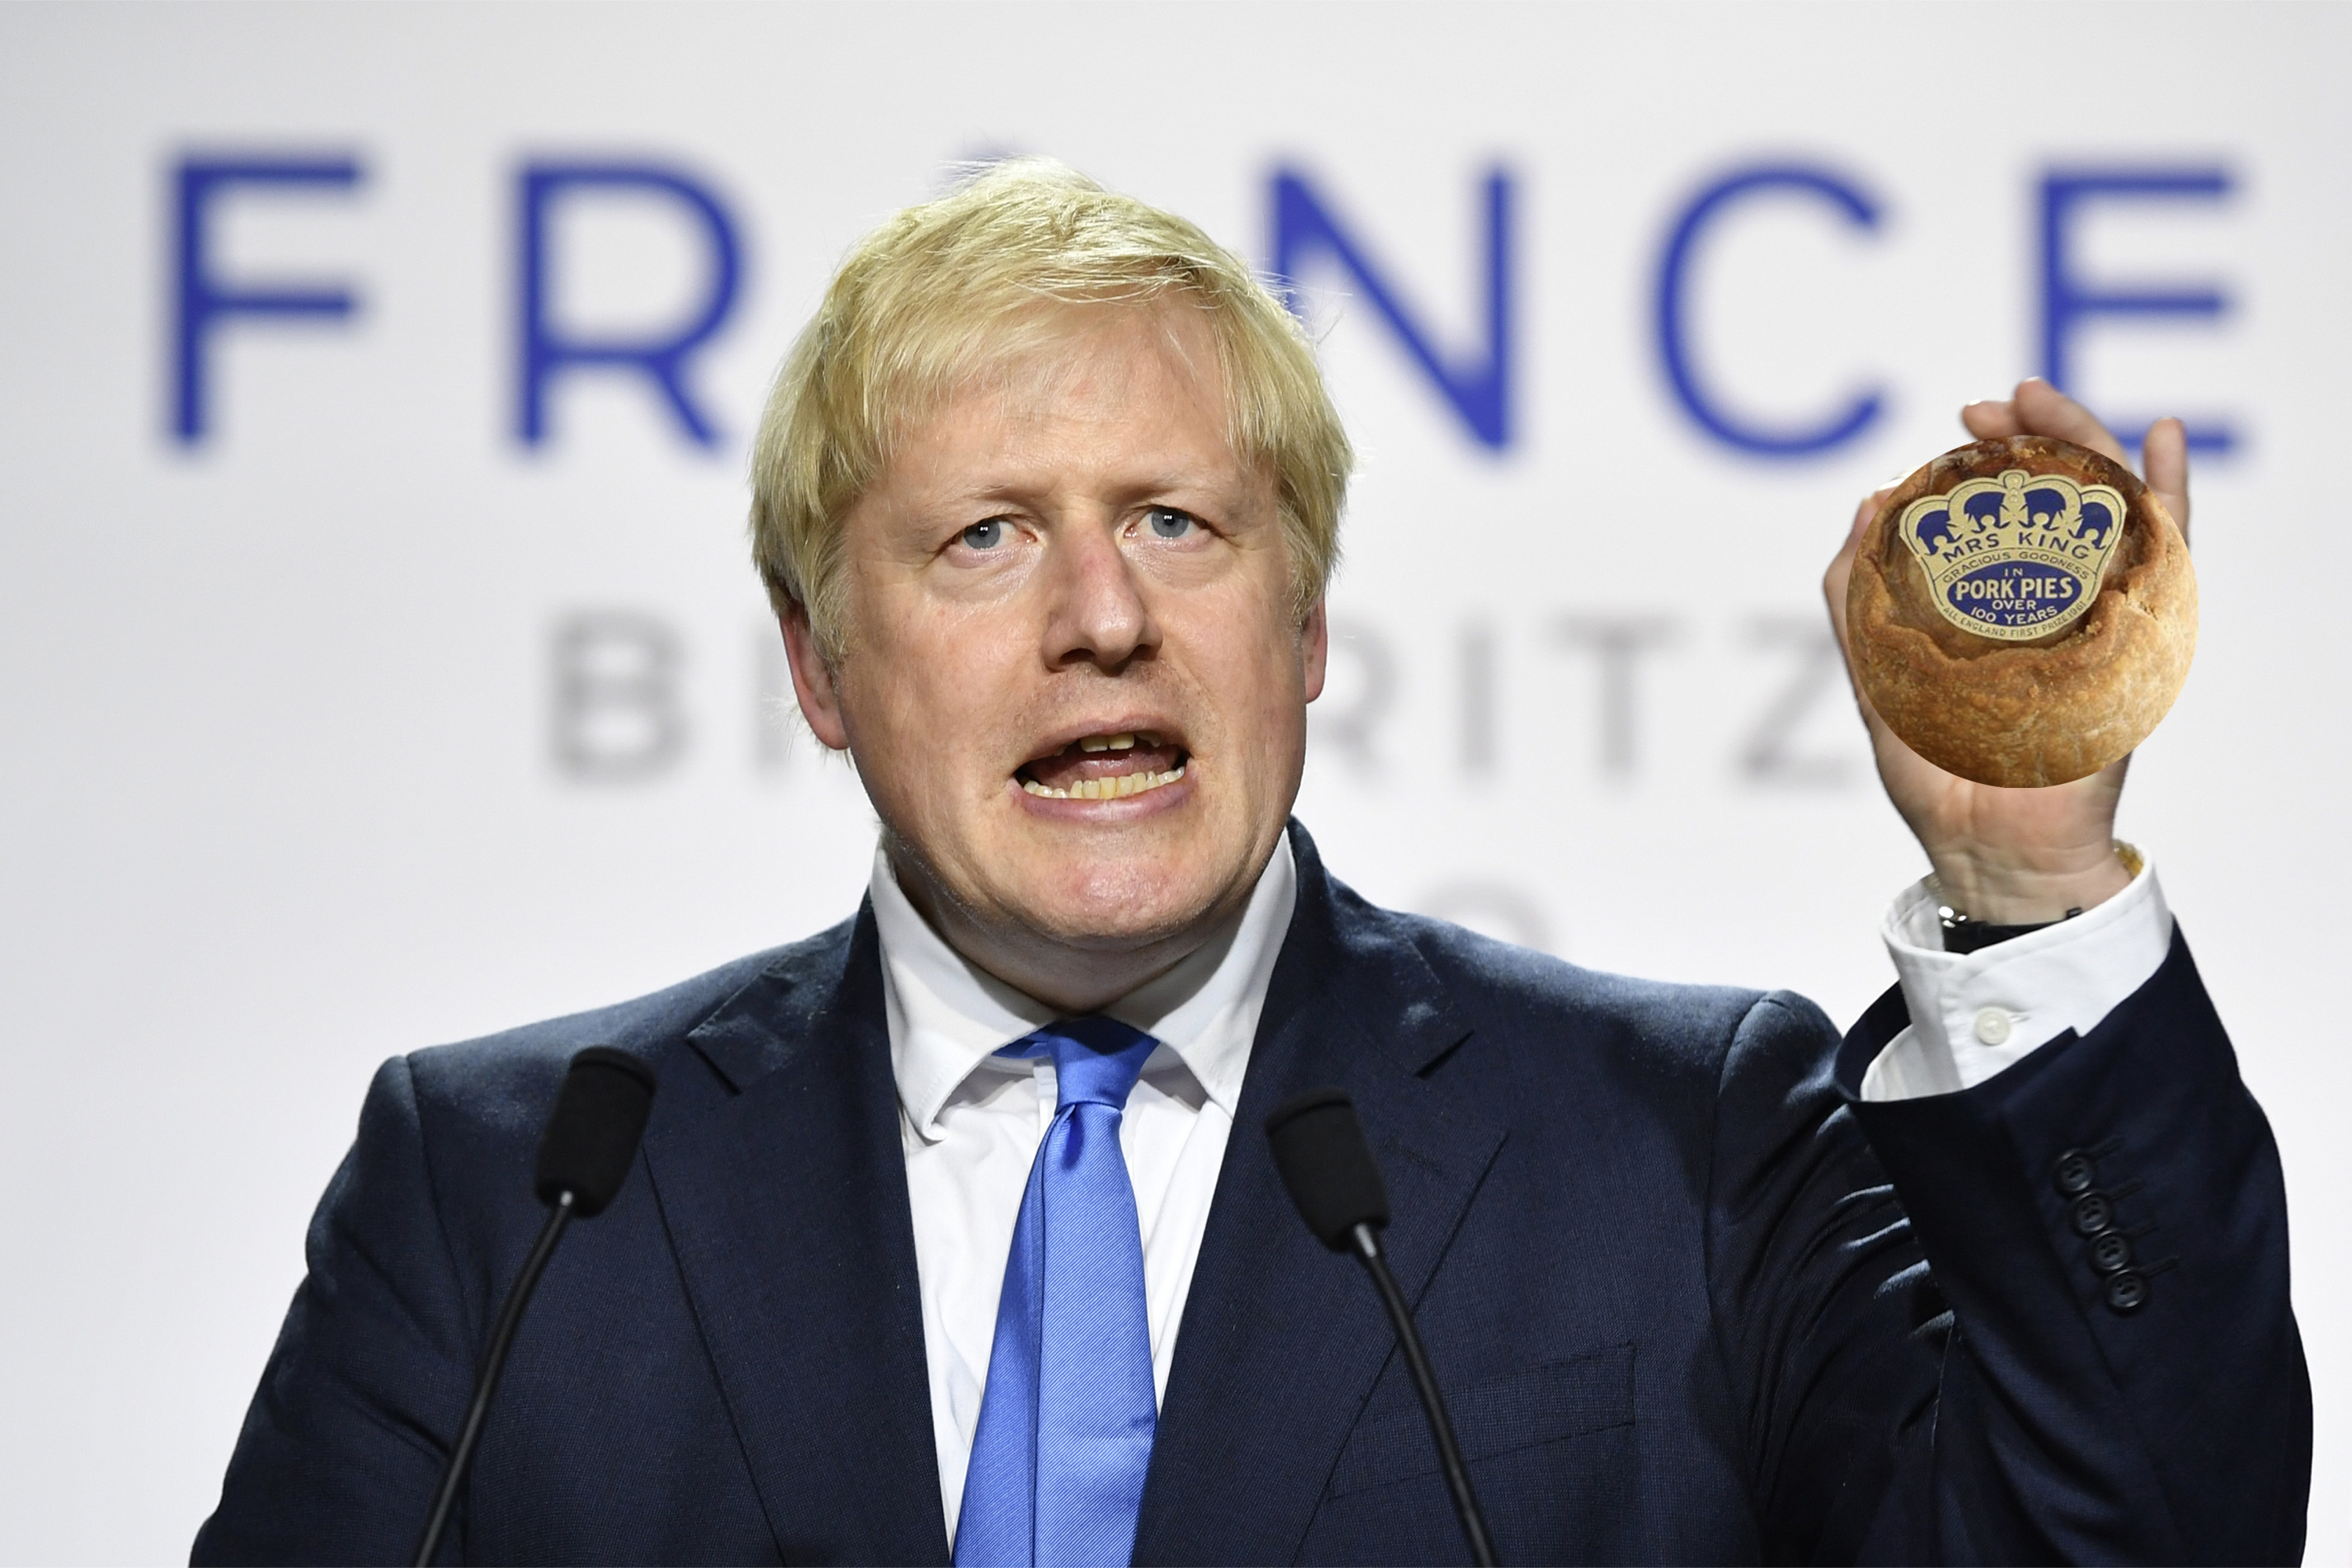 Boris Johnson speaks on Melton Mowbray pork pies at the G7 summit